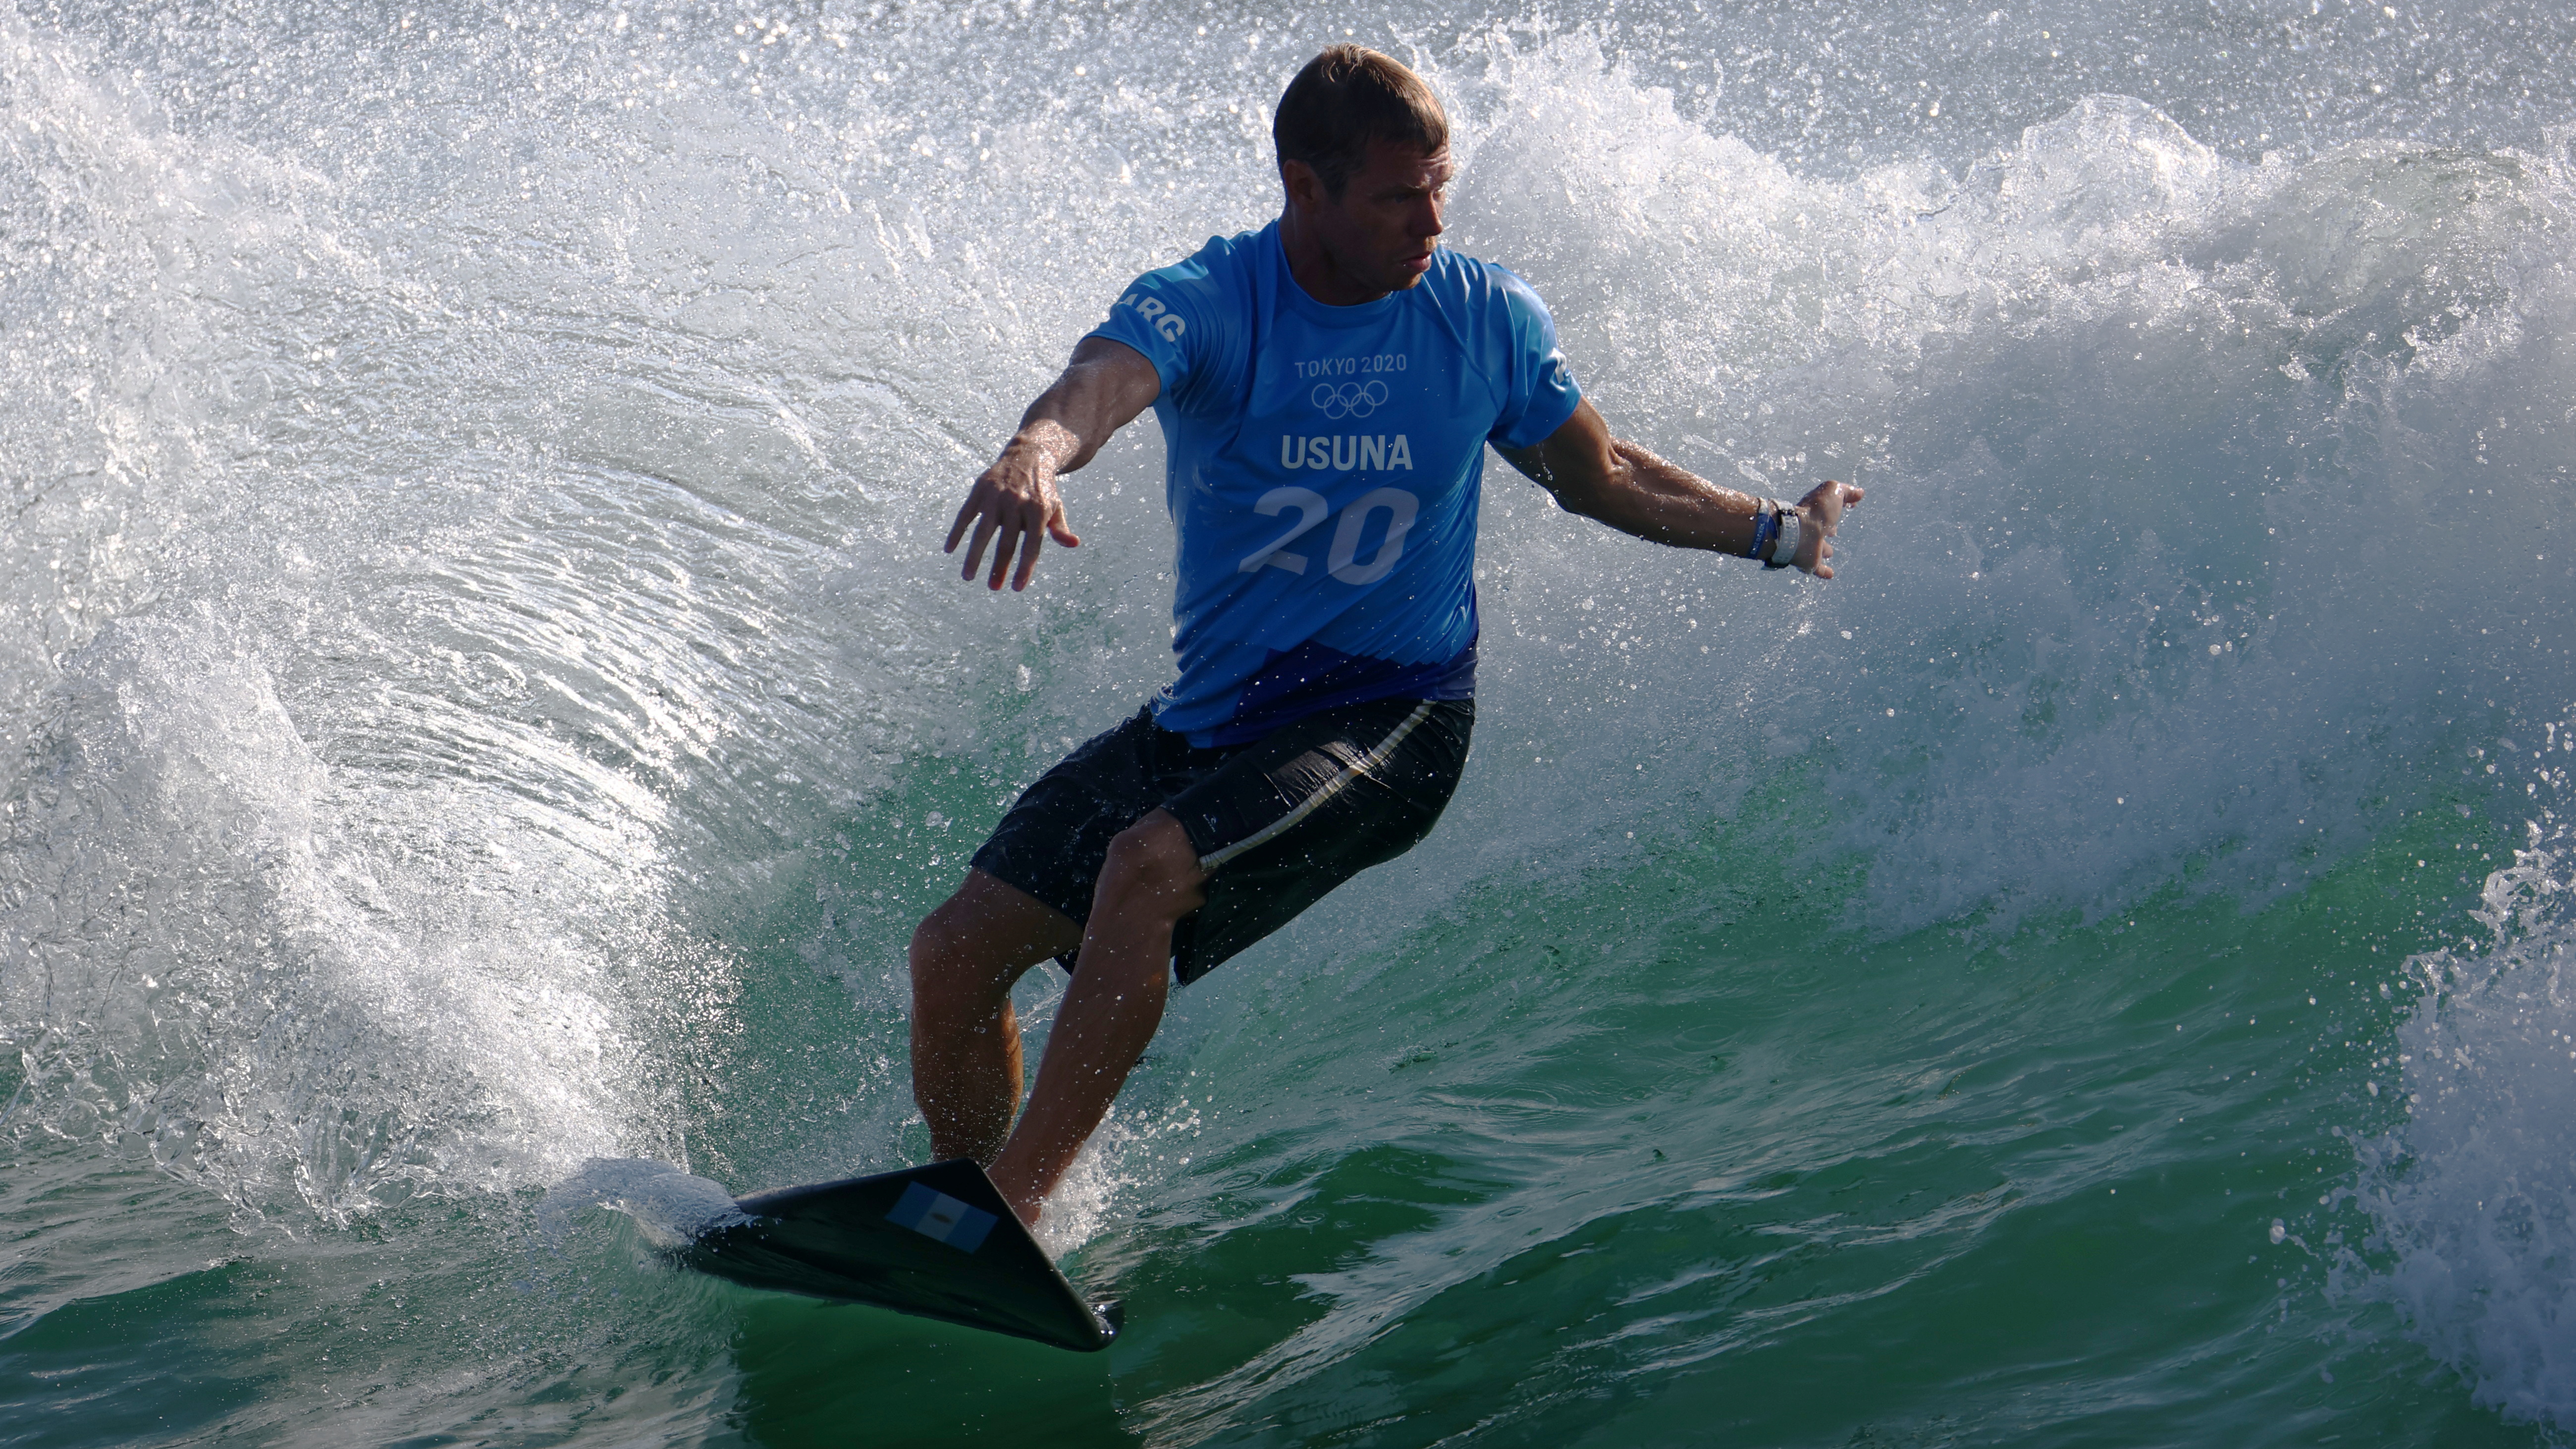 Surfing - Men's Shortboard - Round 1